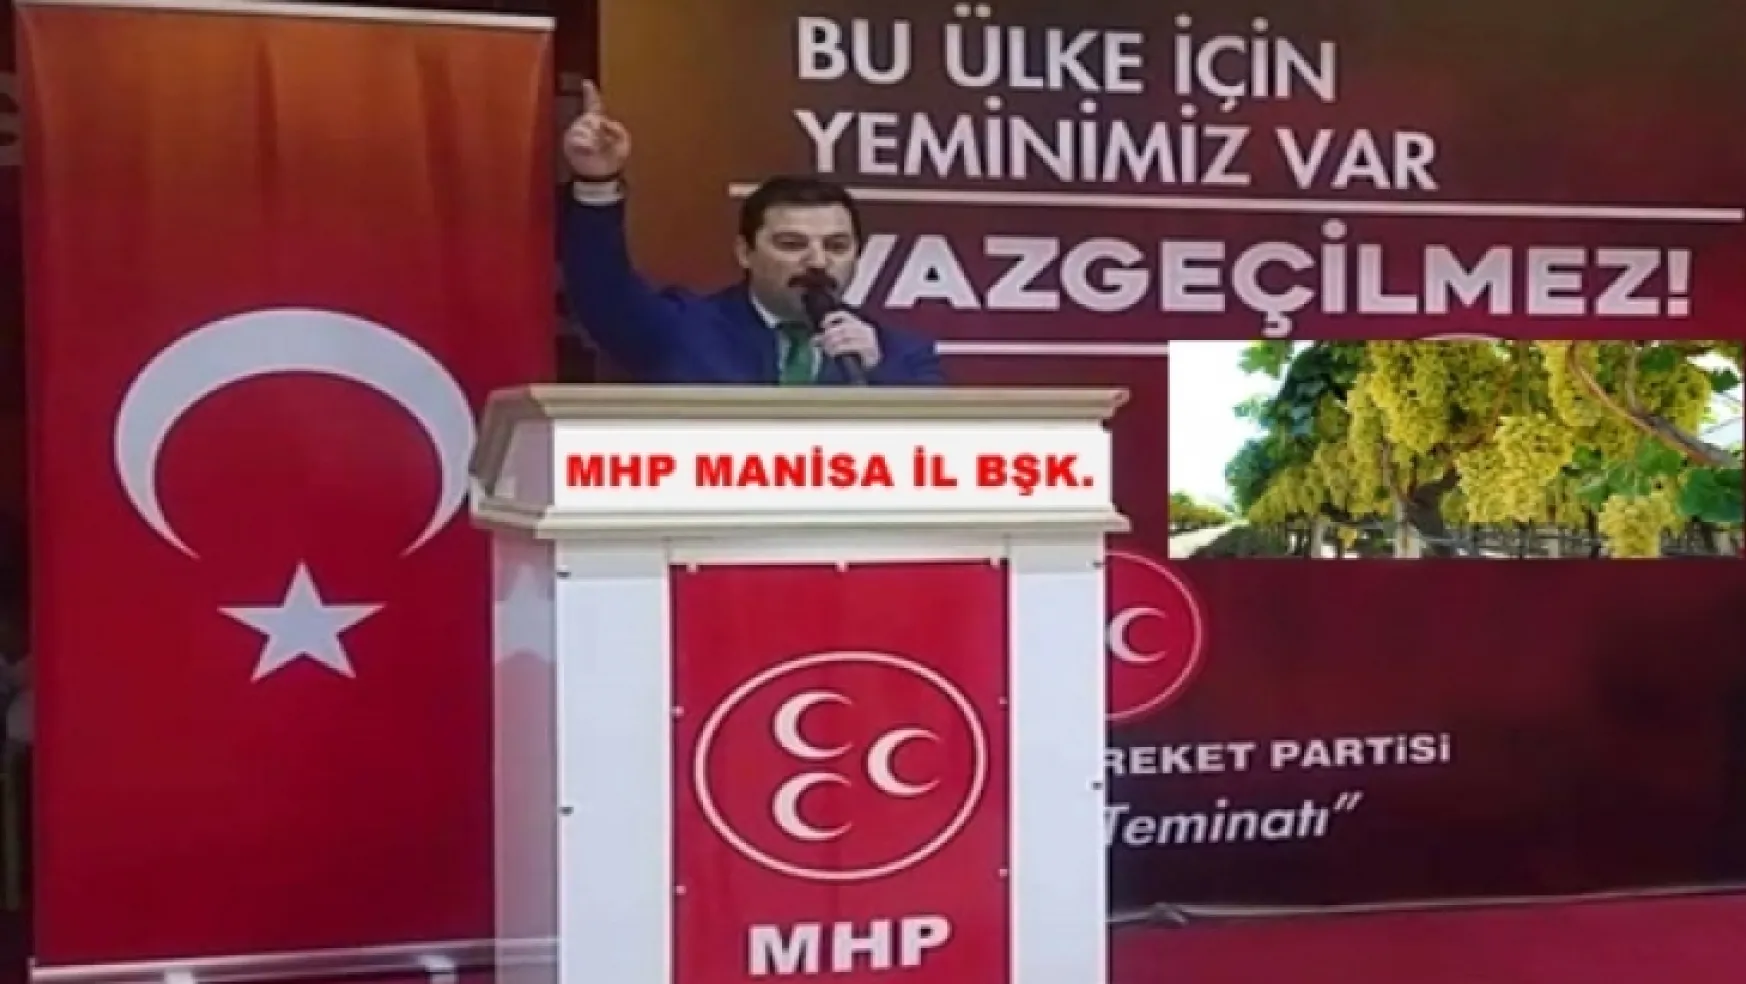 MHP Manisa İl Başkanlığı'ndan üzüm fiyatları açıklaması